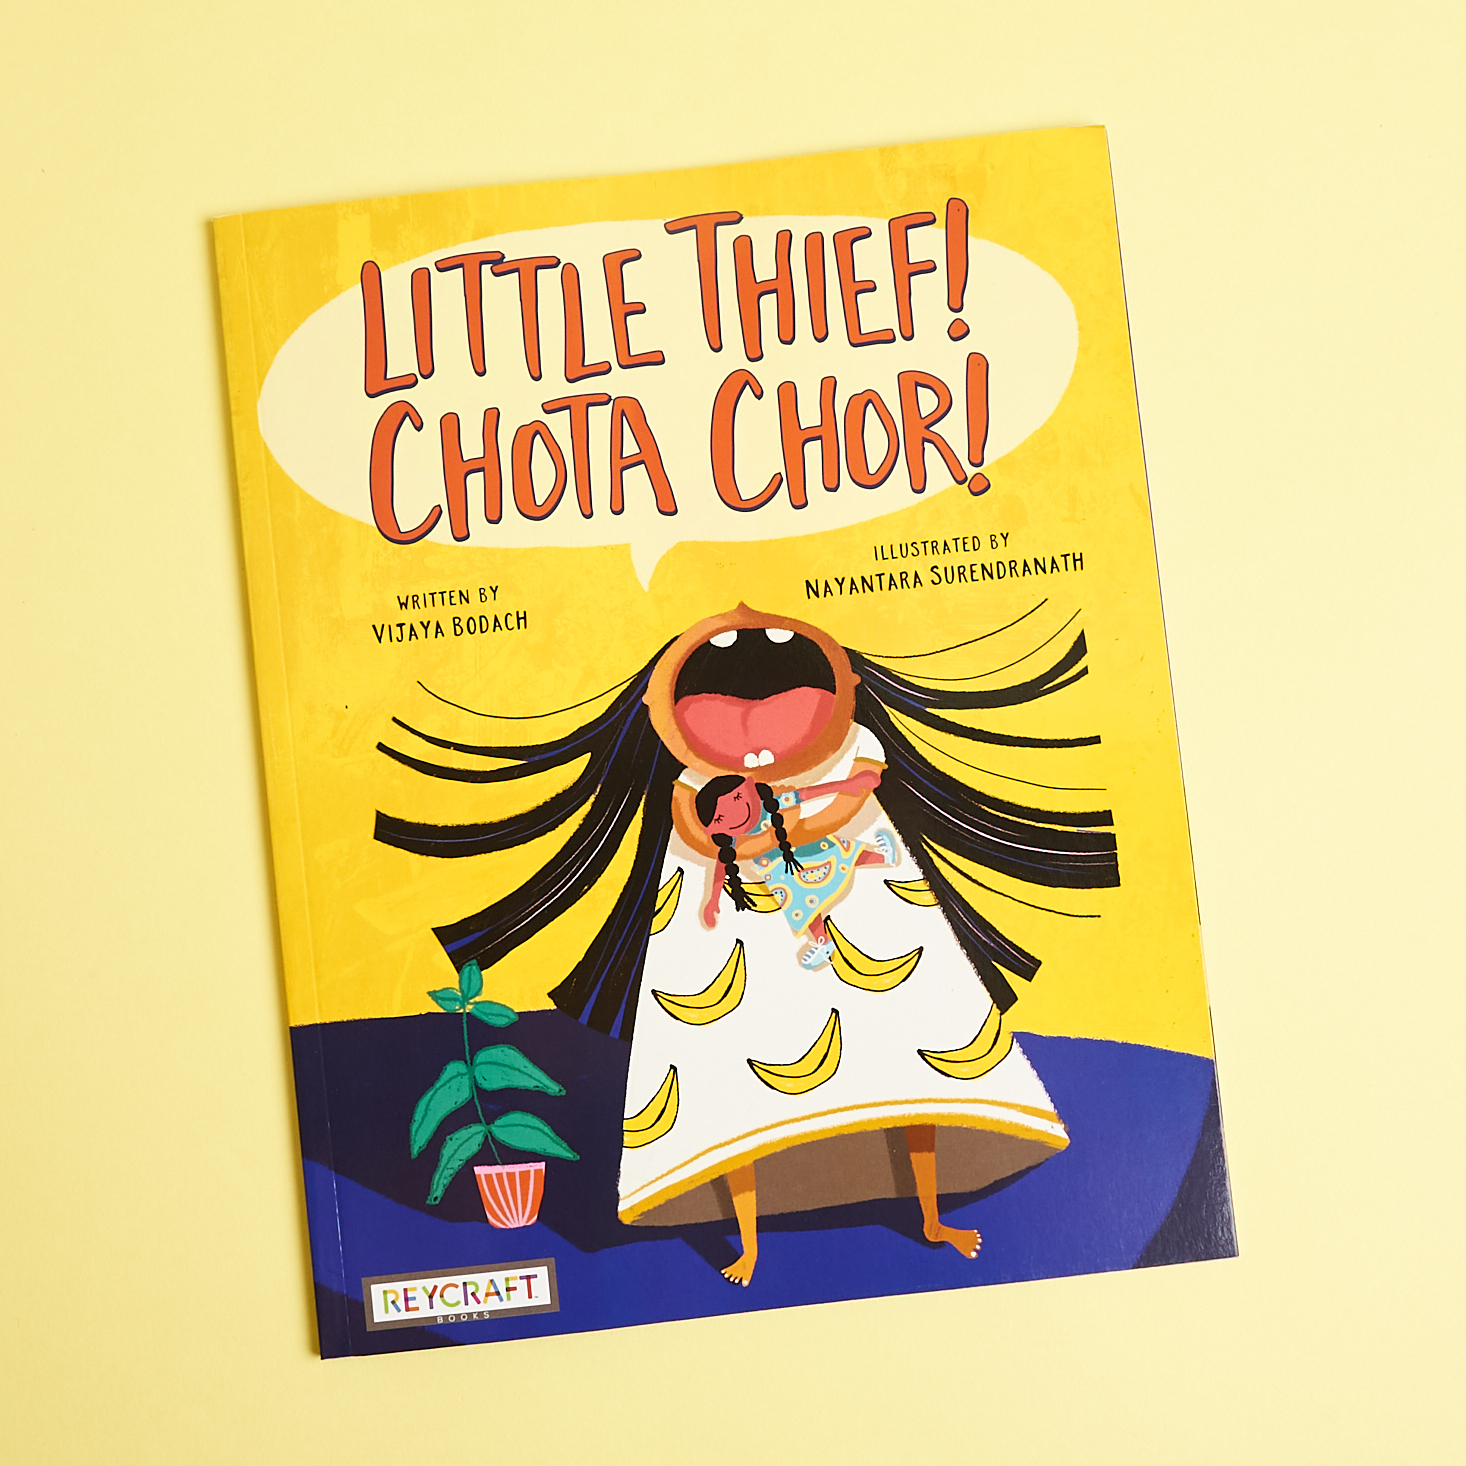 Little Thief! Chota Chor! book from Little Feminist 2-4 September 2021